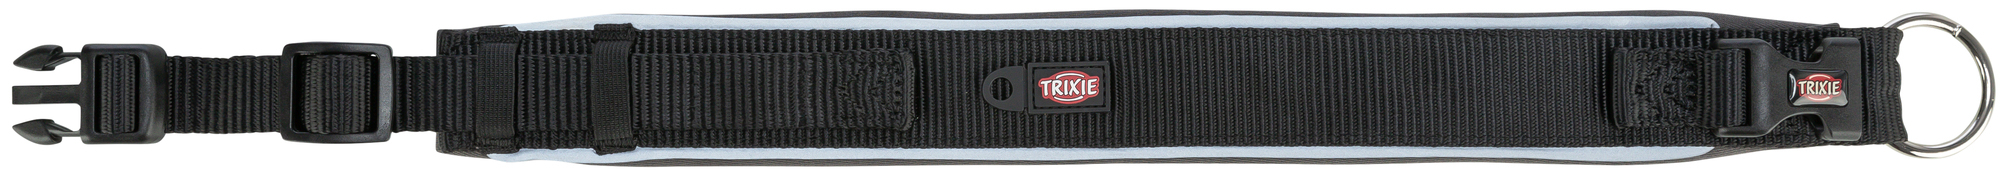 Trixie Premium halsband extra large - Zwart/Grijs Grafiet